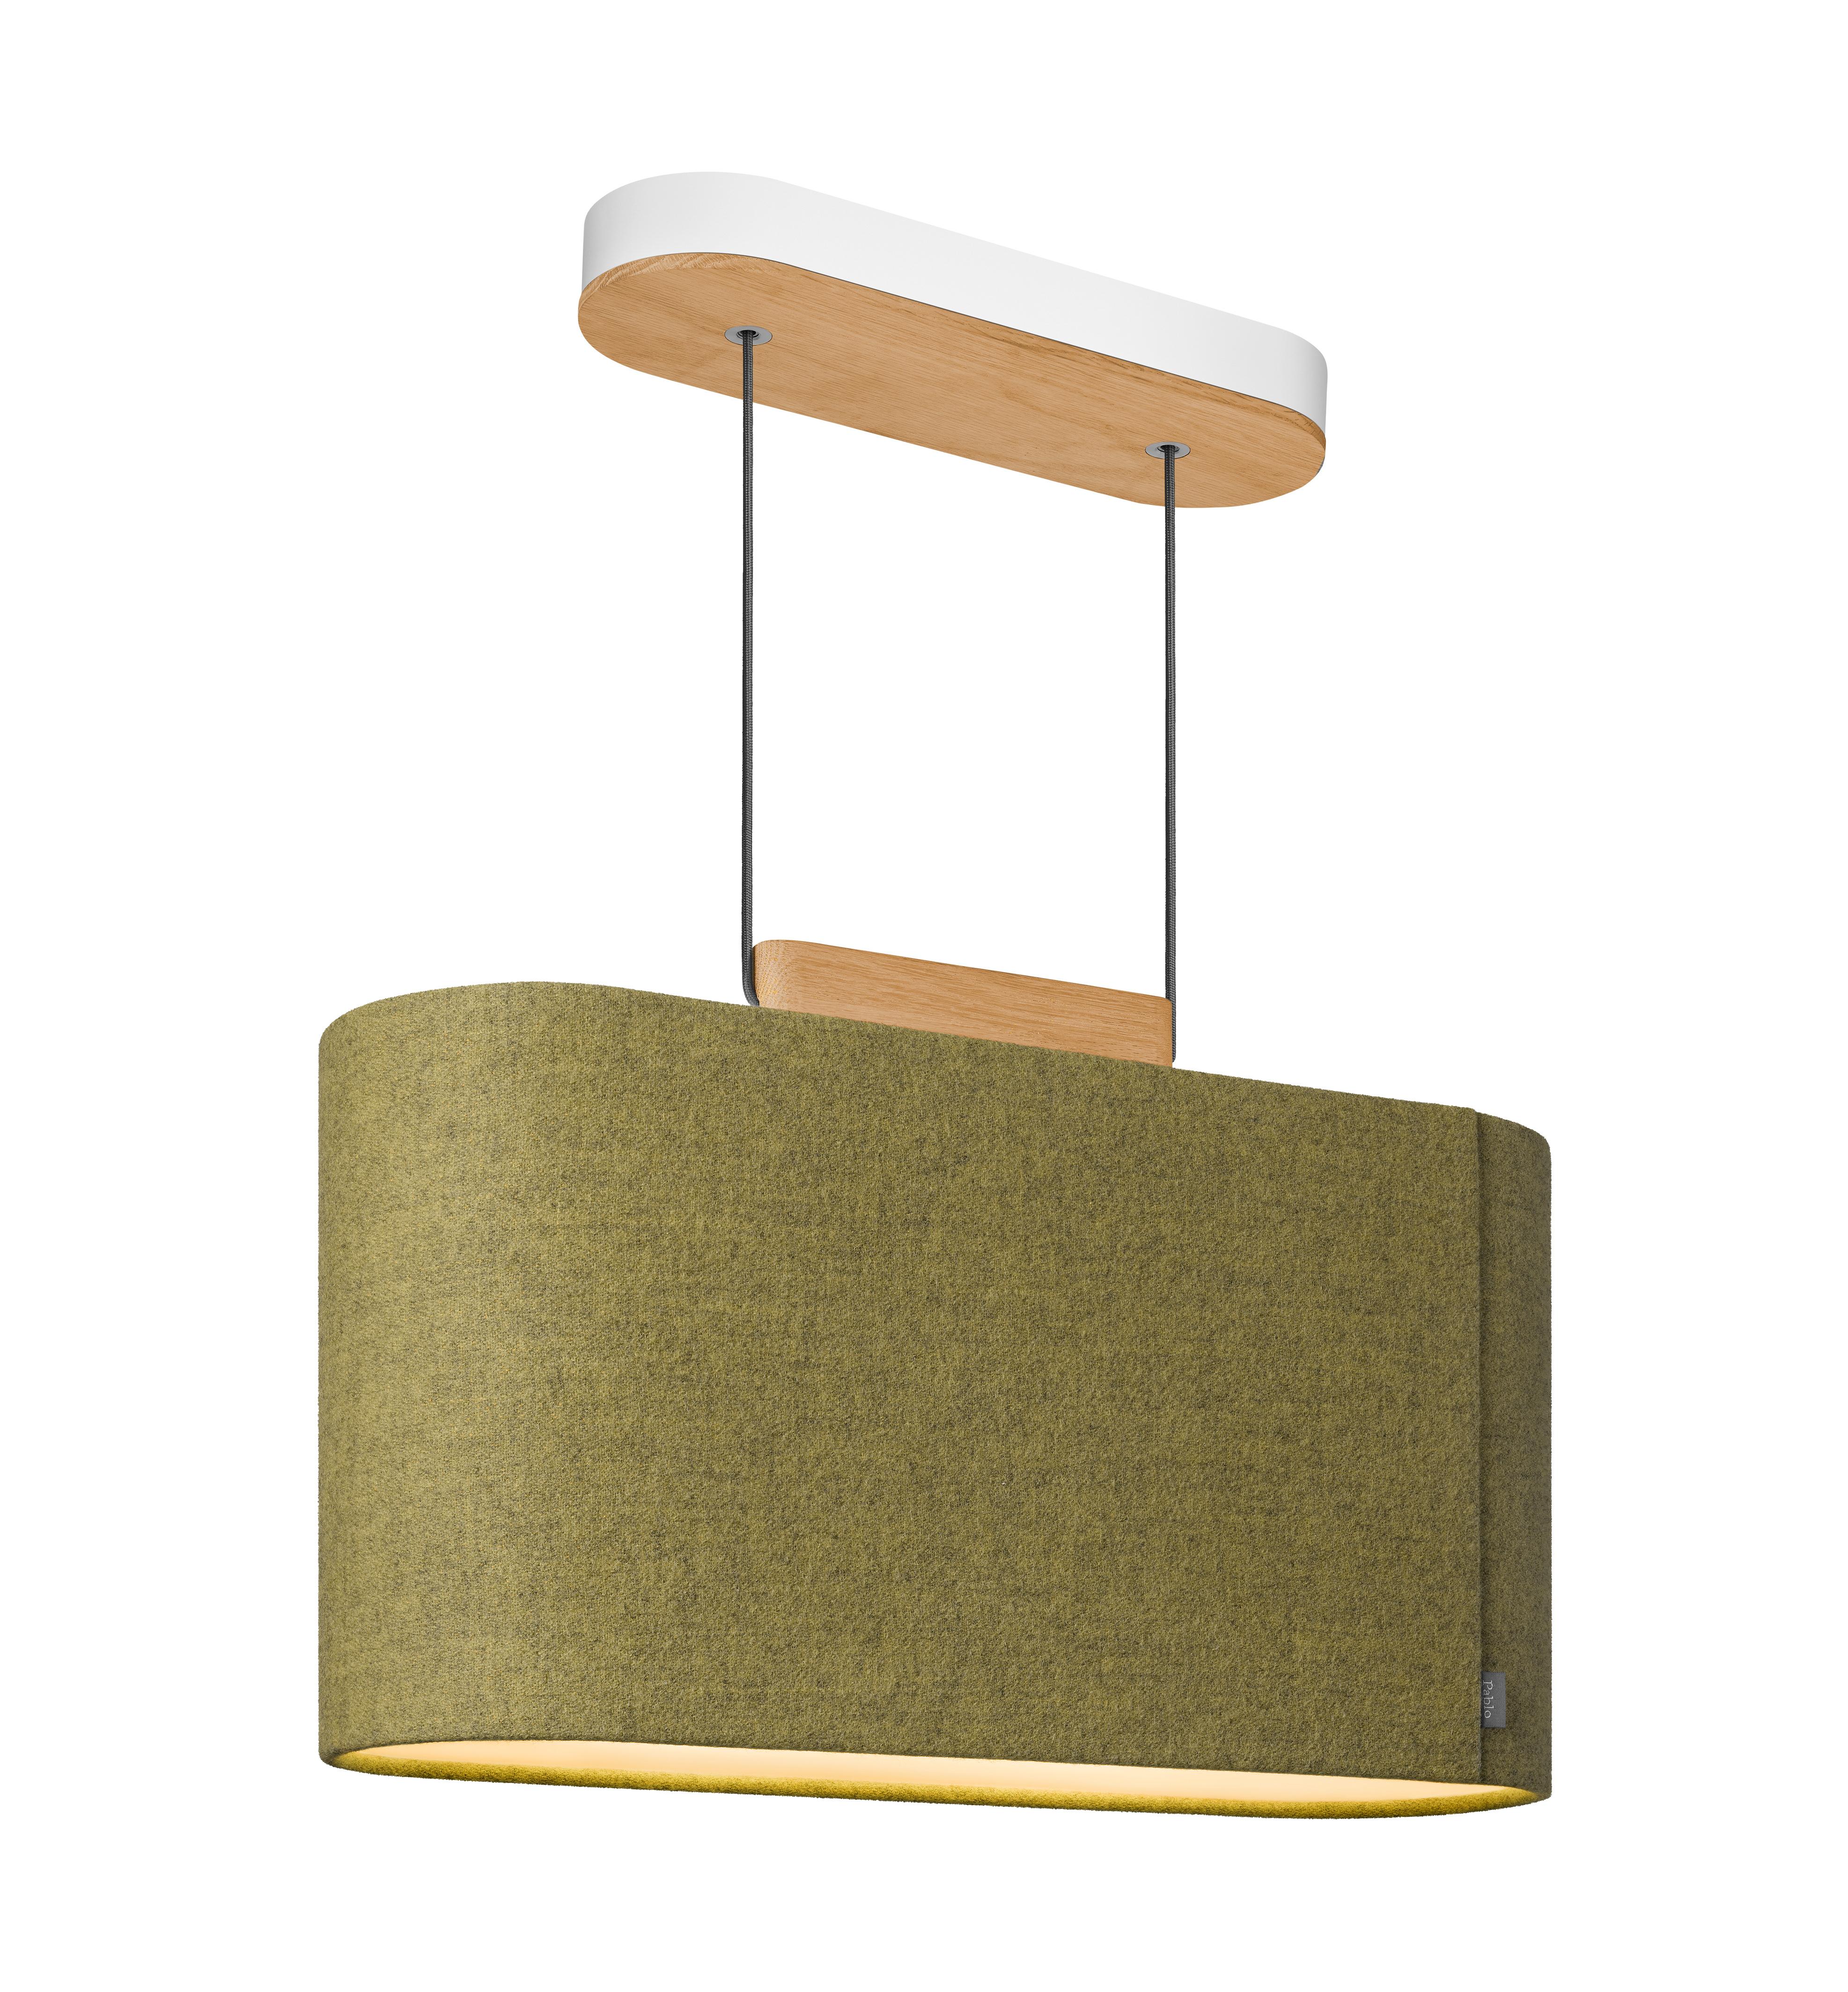 Die Belmont-Kollektion entstand in Zusammenarbeit mit dem Designer Brad Ascalon, der die traditionelle Lampe mit Stoffschirm mit der Wärme und Kostbarkeit von handgefertigten Möbeln neu interpretierte. Die ikonische und doch reduzierte Form von